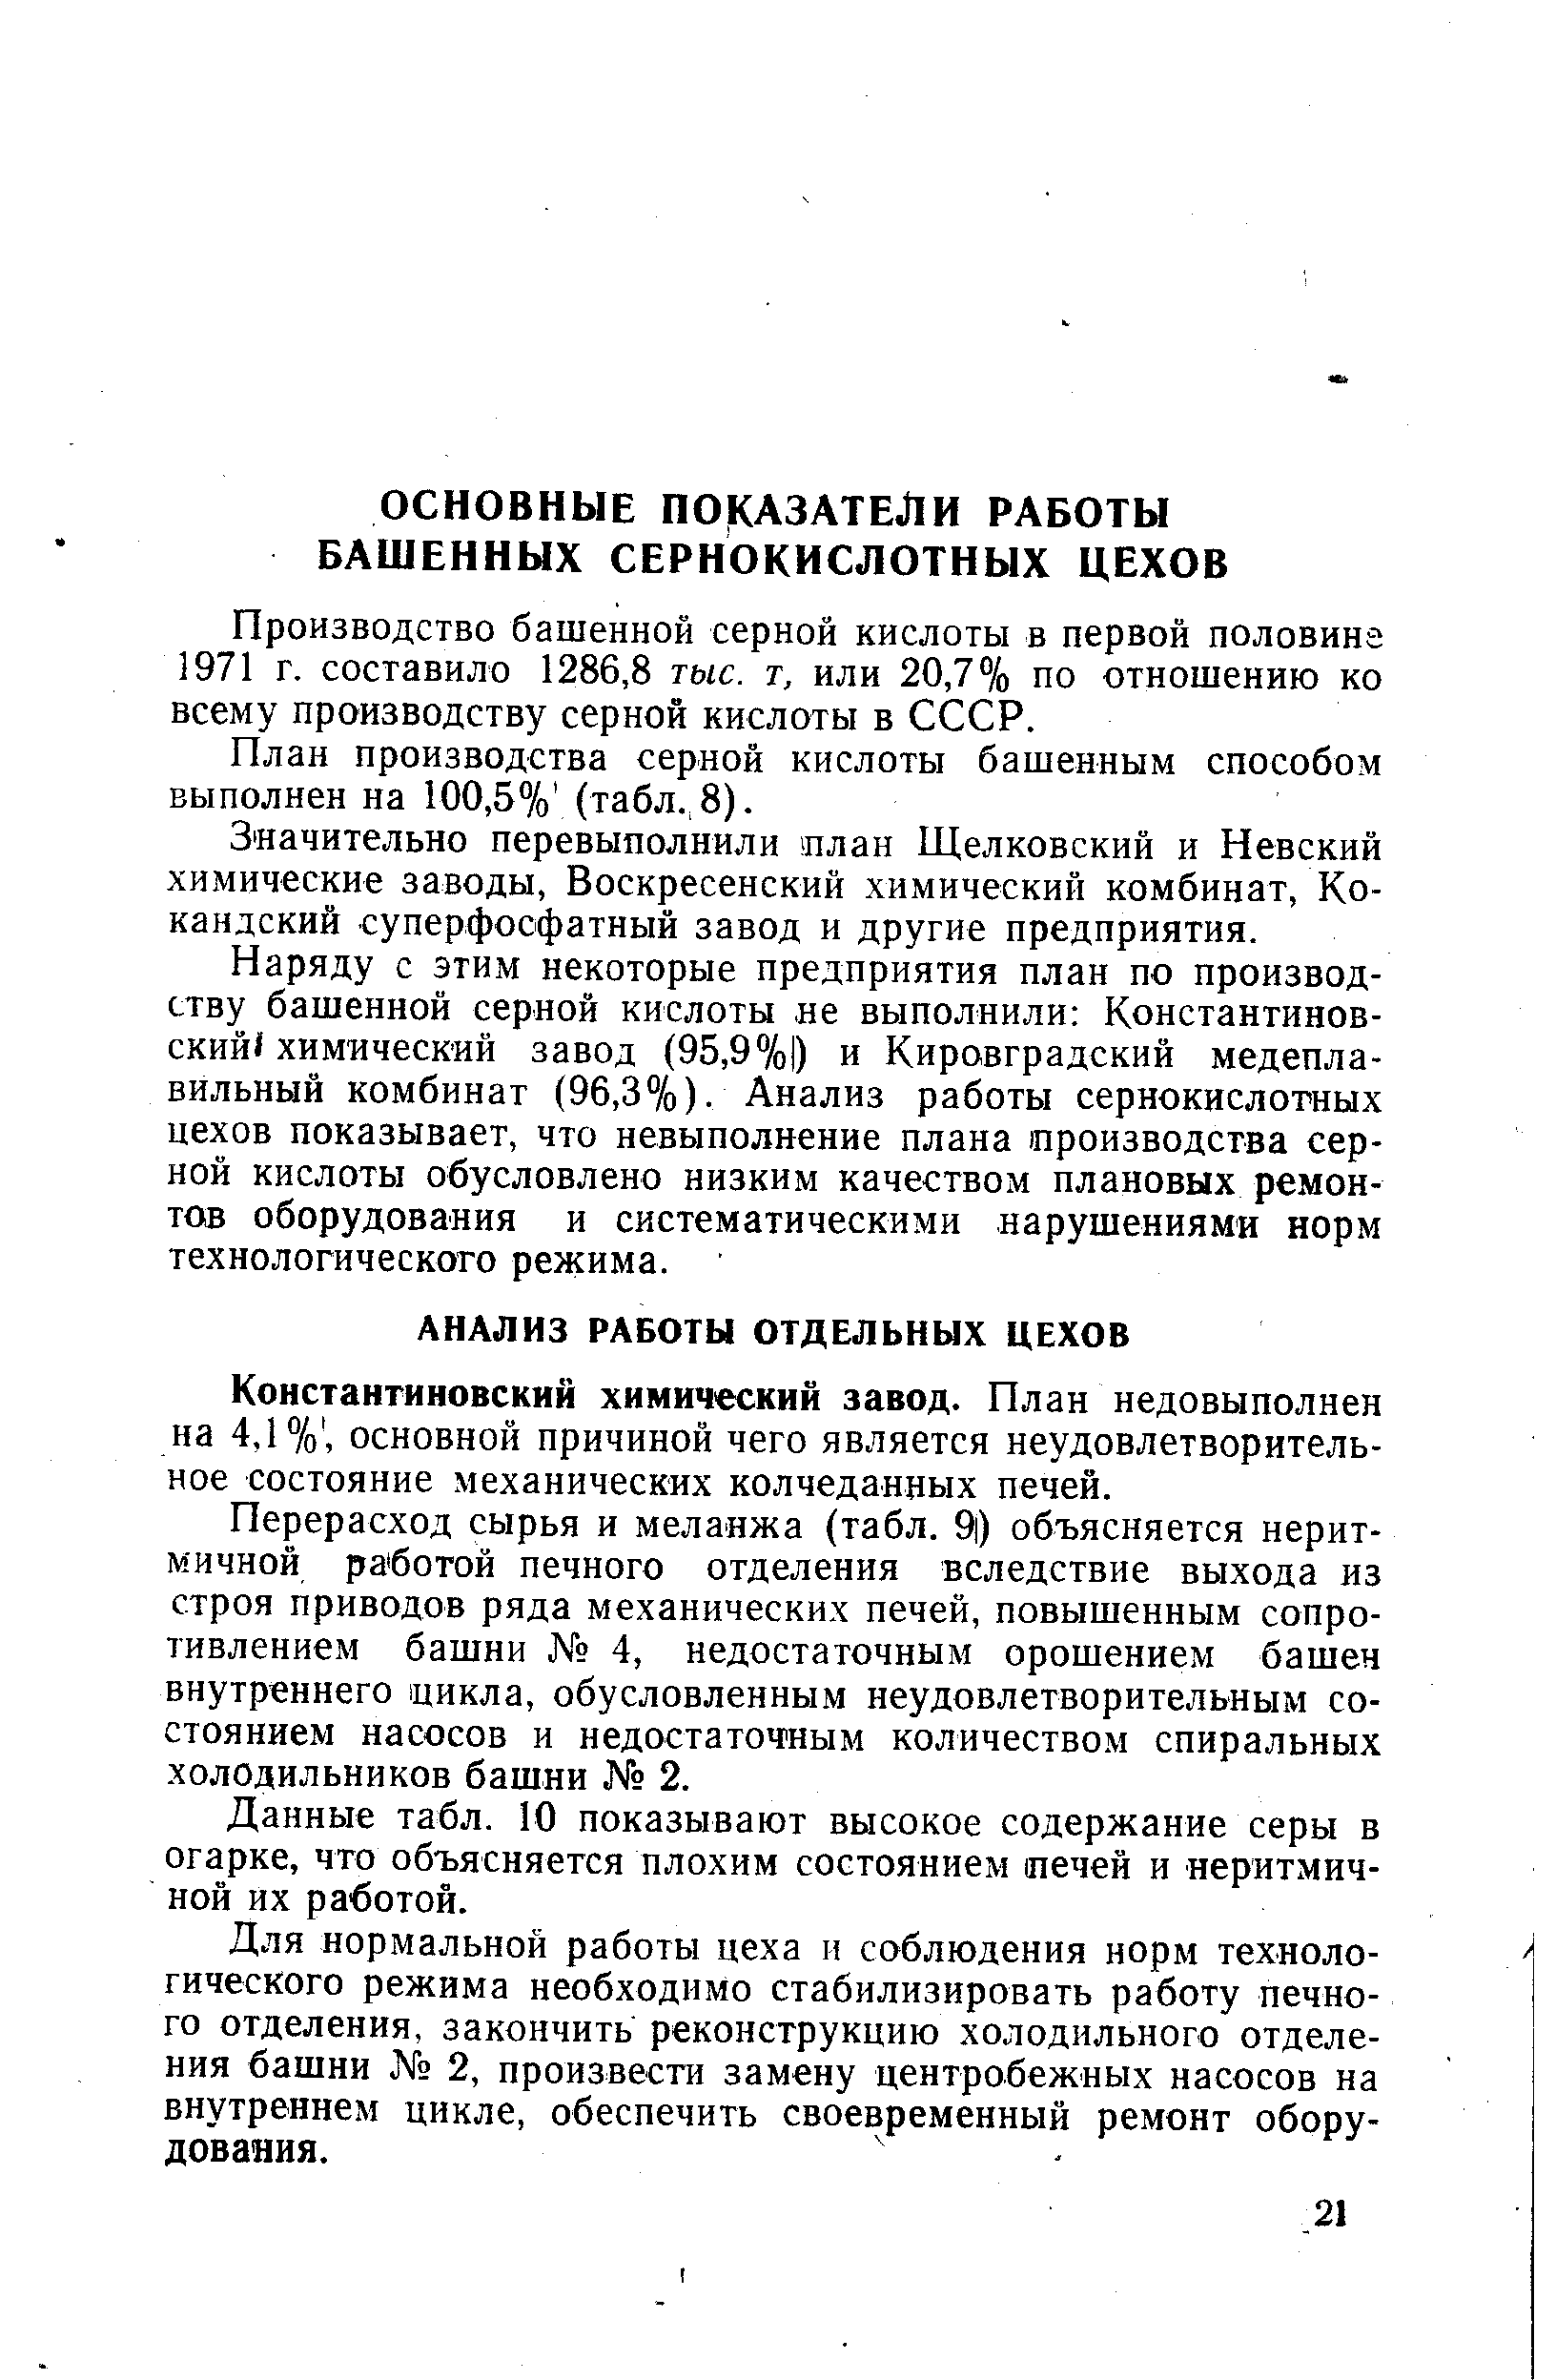 Производство башенной серной кислоты в первой половина 1971 г. составило 1286,8 тыс. т, или 20,7% по отношению ко всему производству серной кислоты в СССР.